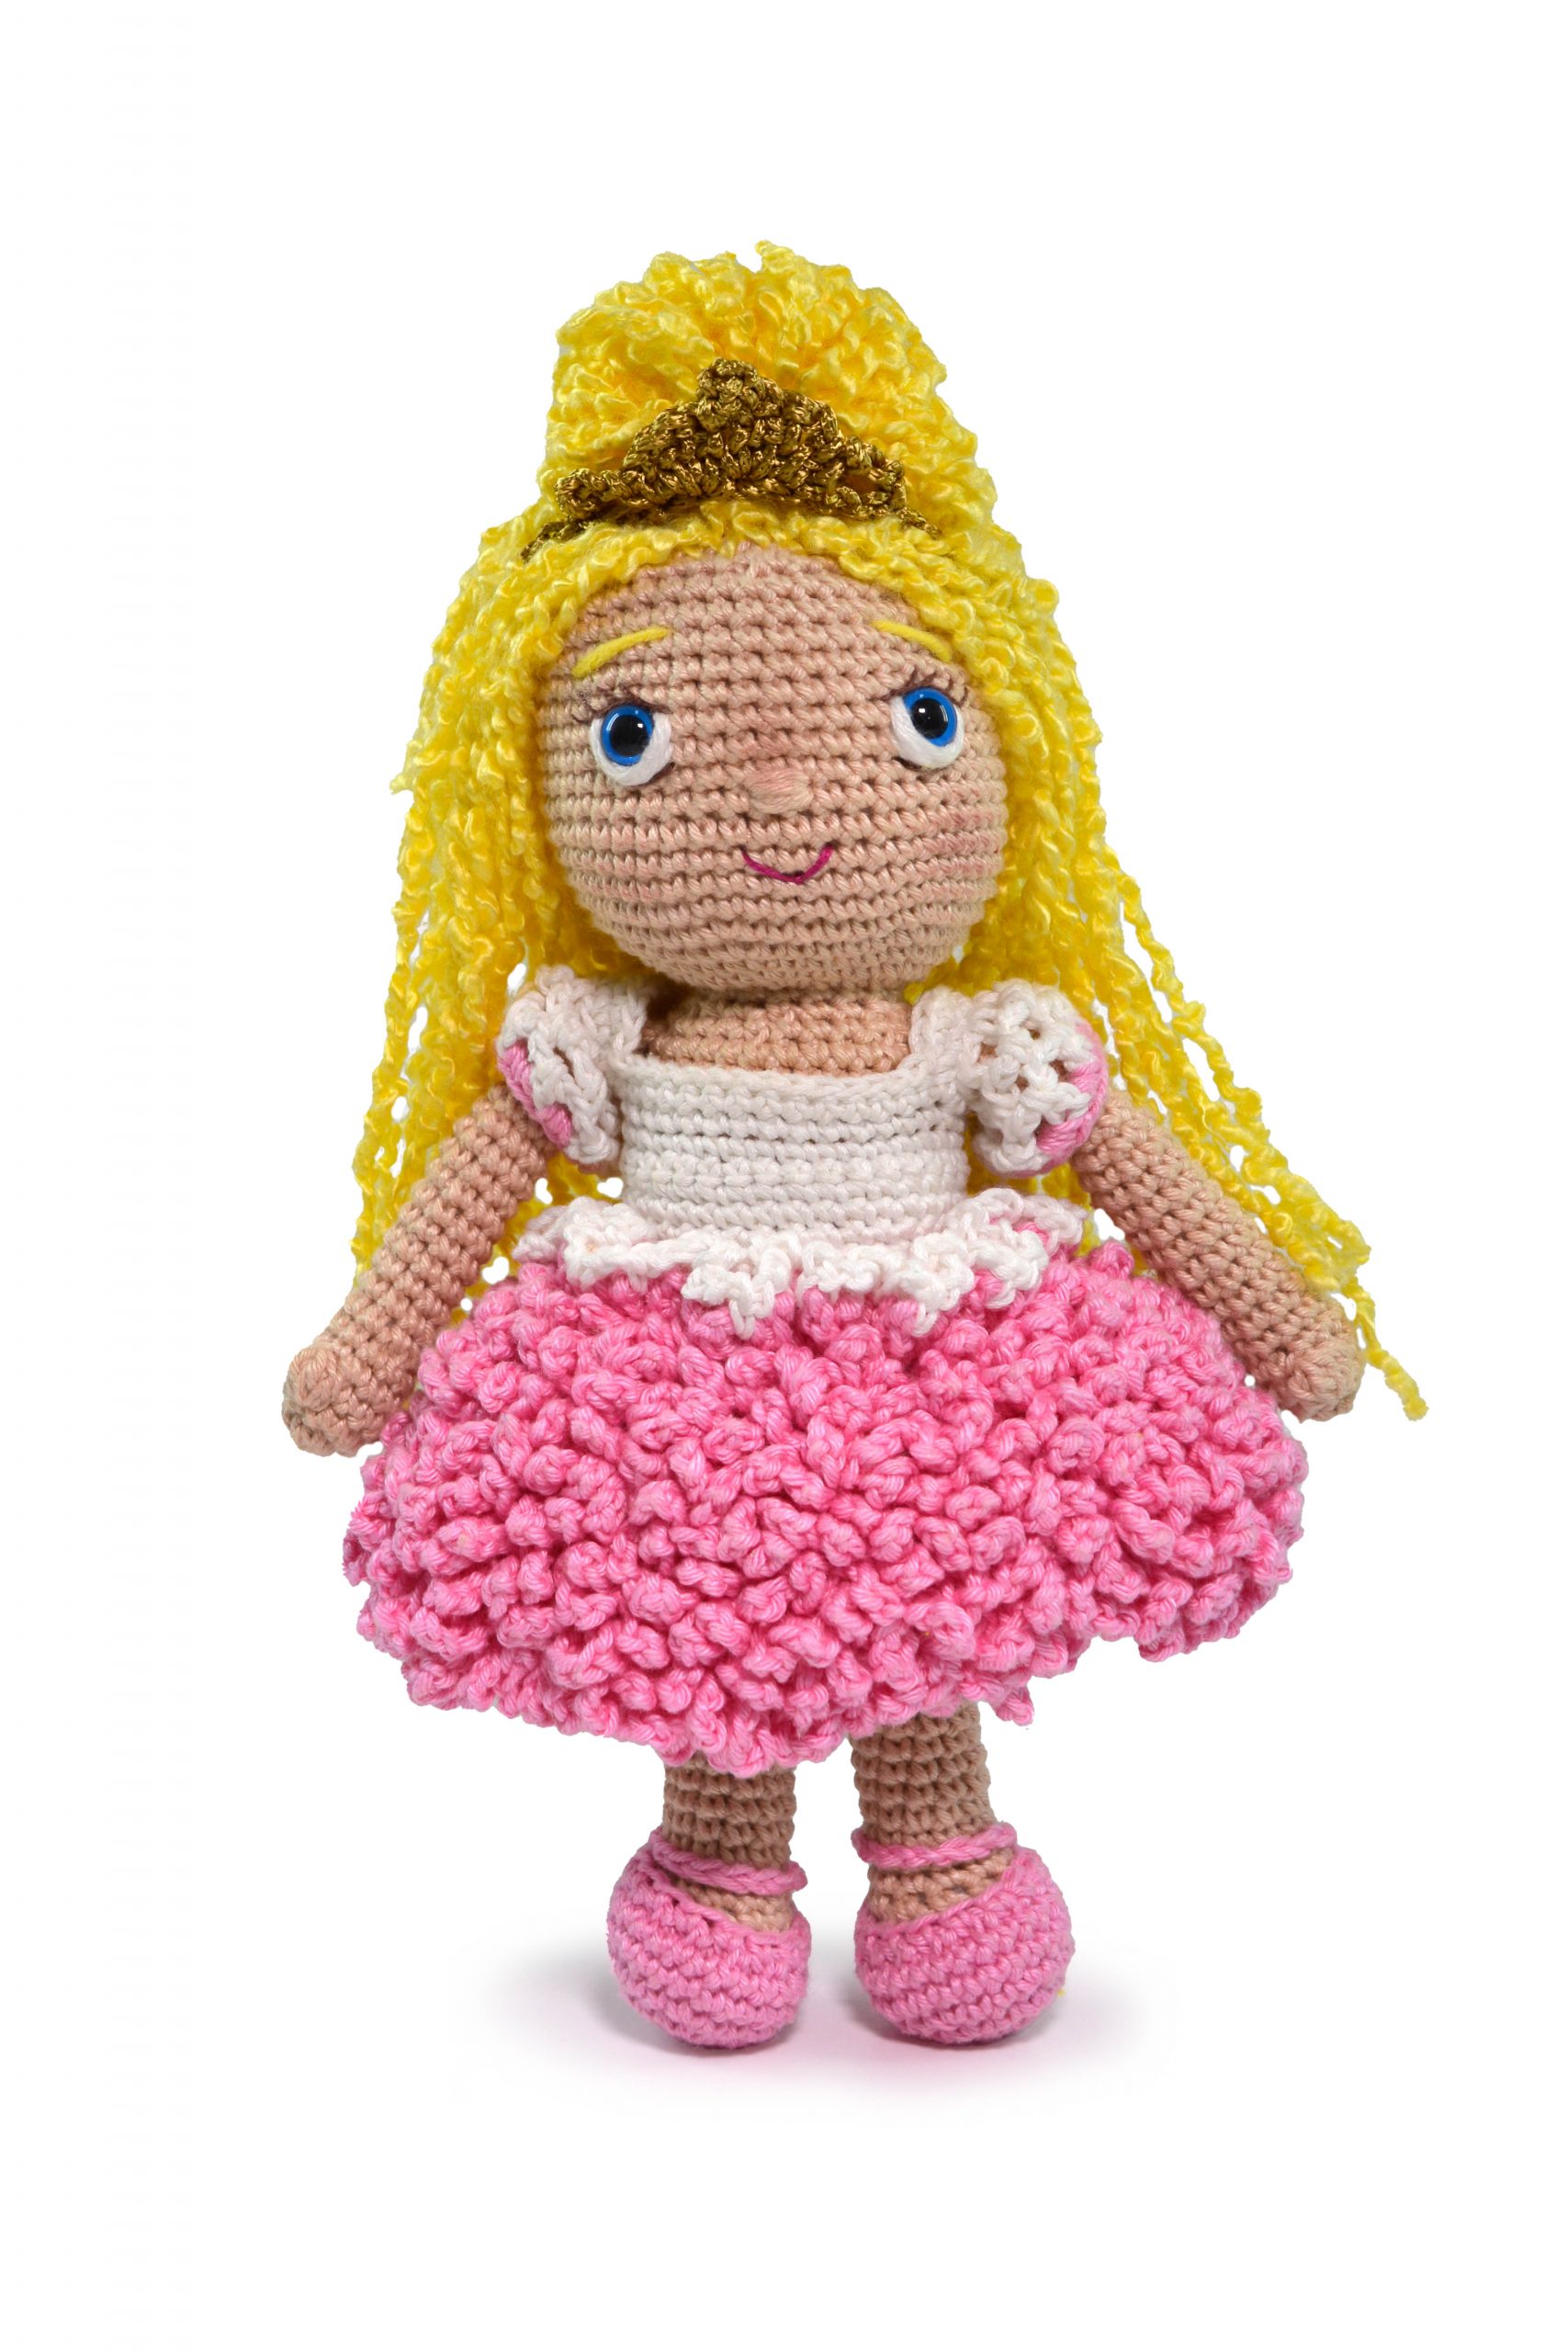 Tricô e Crochê BEBÊ: Vestido Princesinha Croche